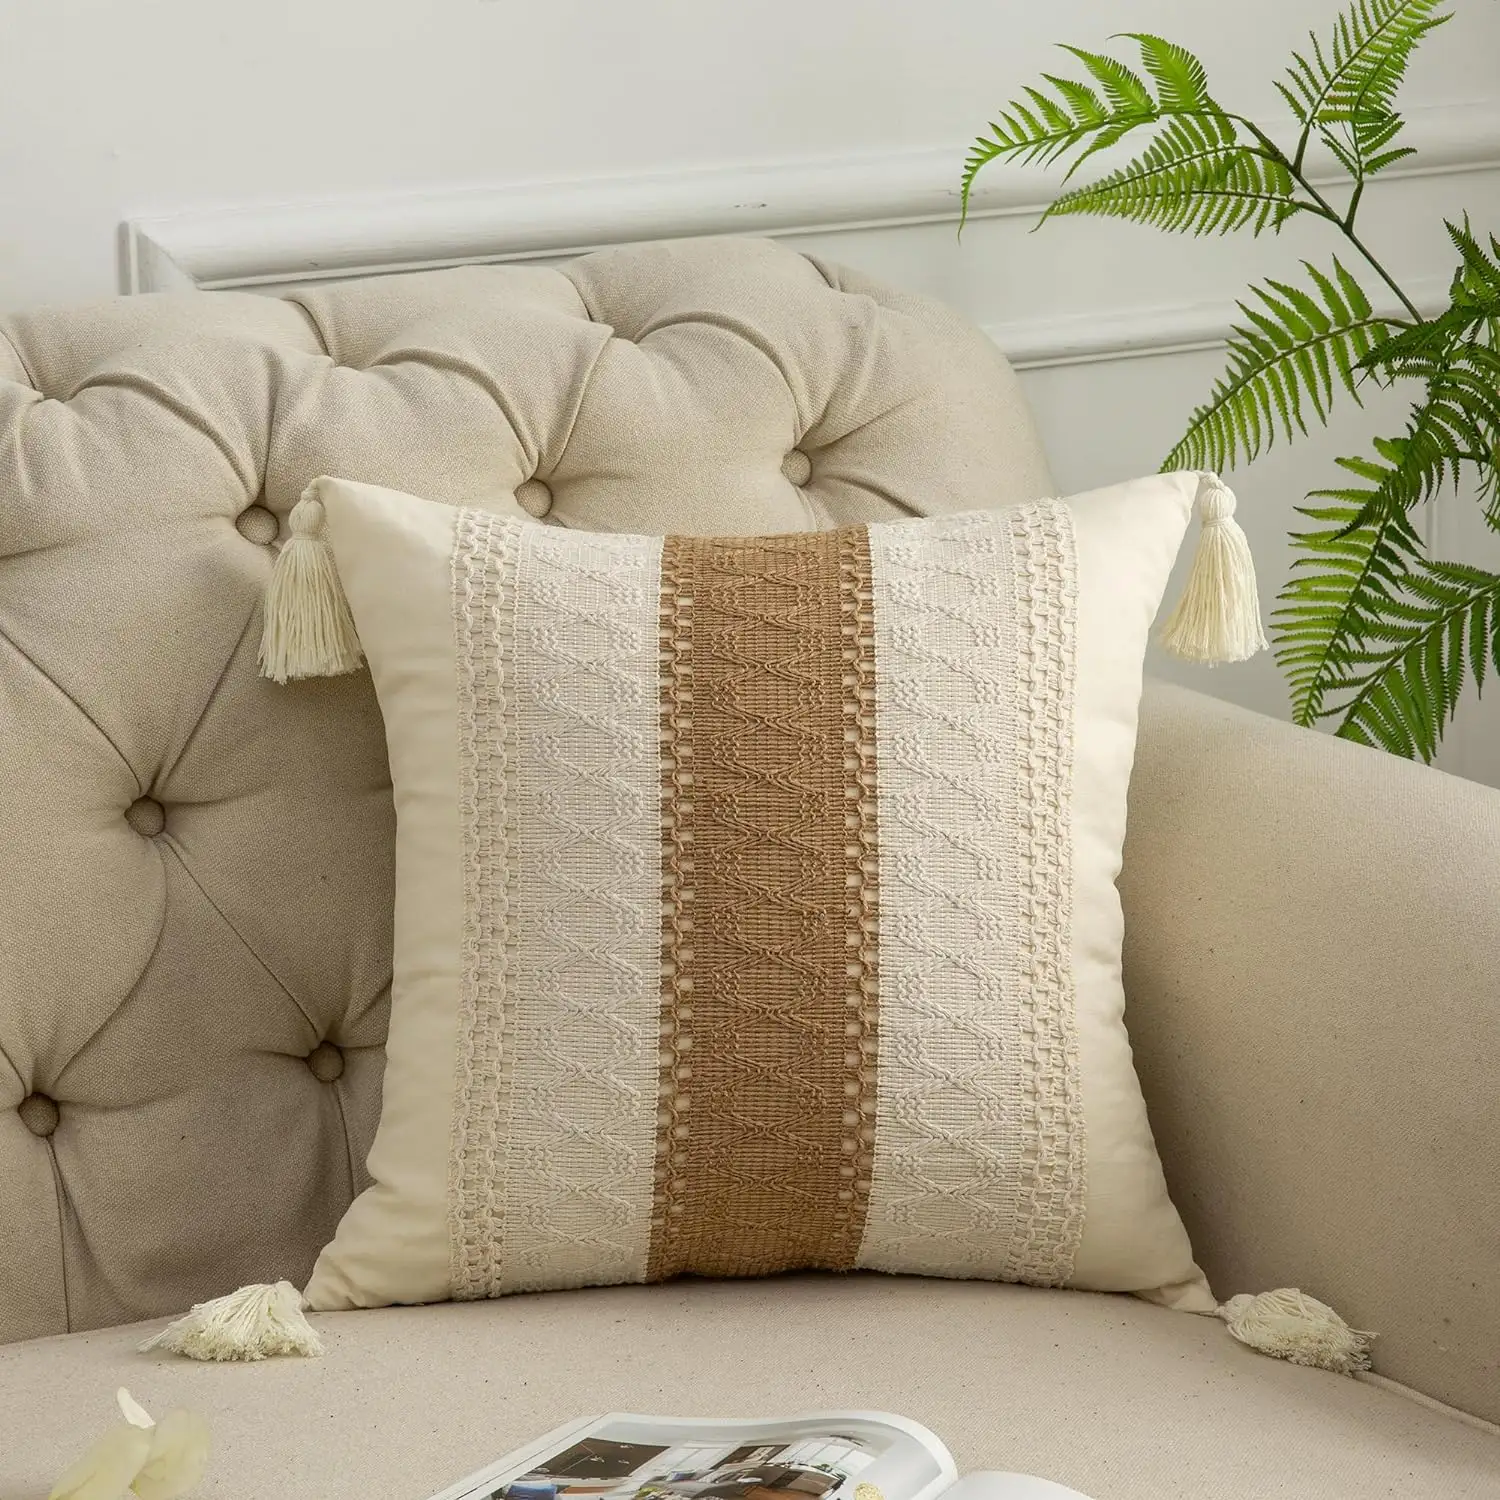 Fundas De Almohada bohemias Juego de almohadas con borlas de algodón y lino Cojines de sofá de sala de estar de estilo bohemio Funda de almohada de lujo